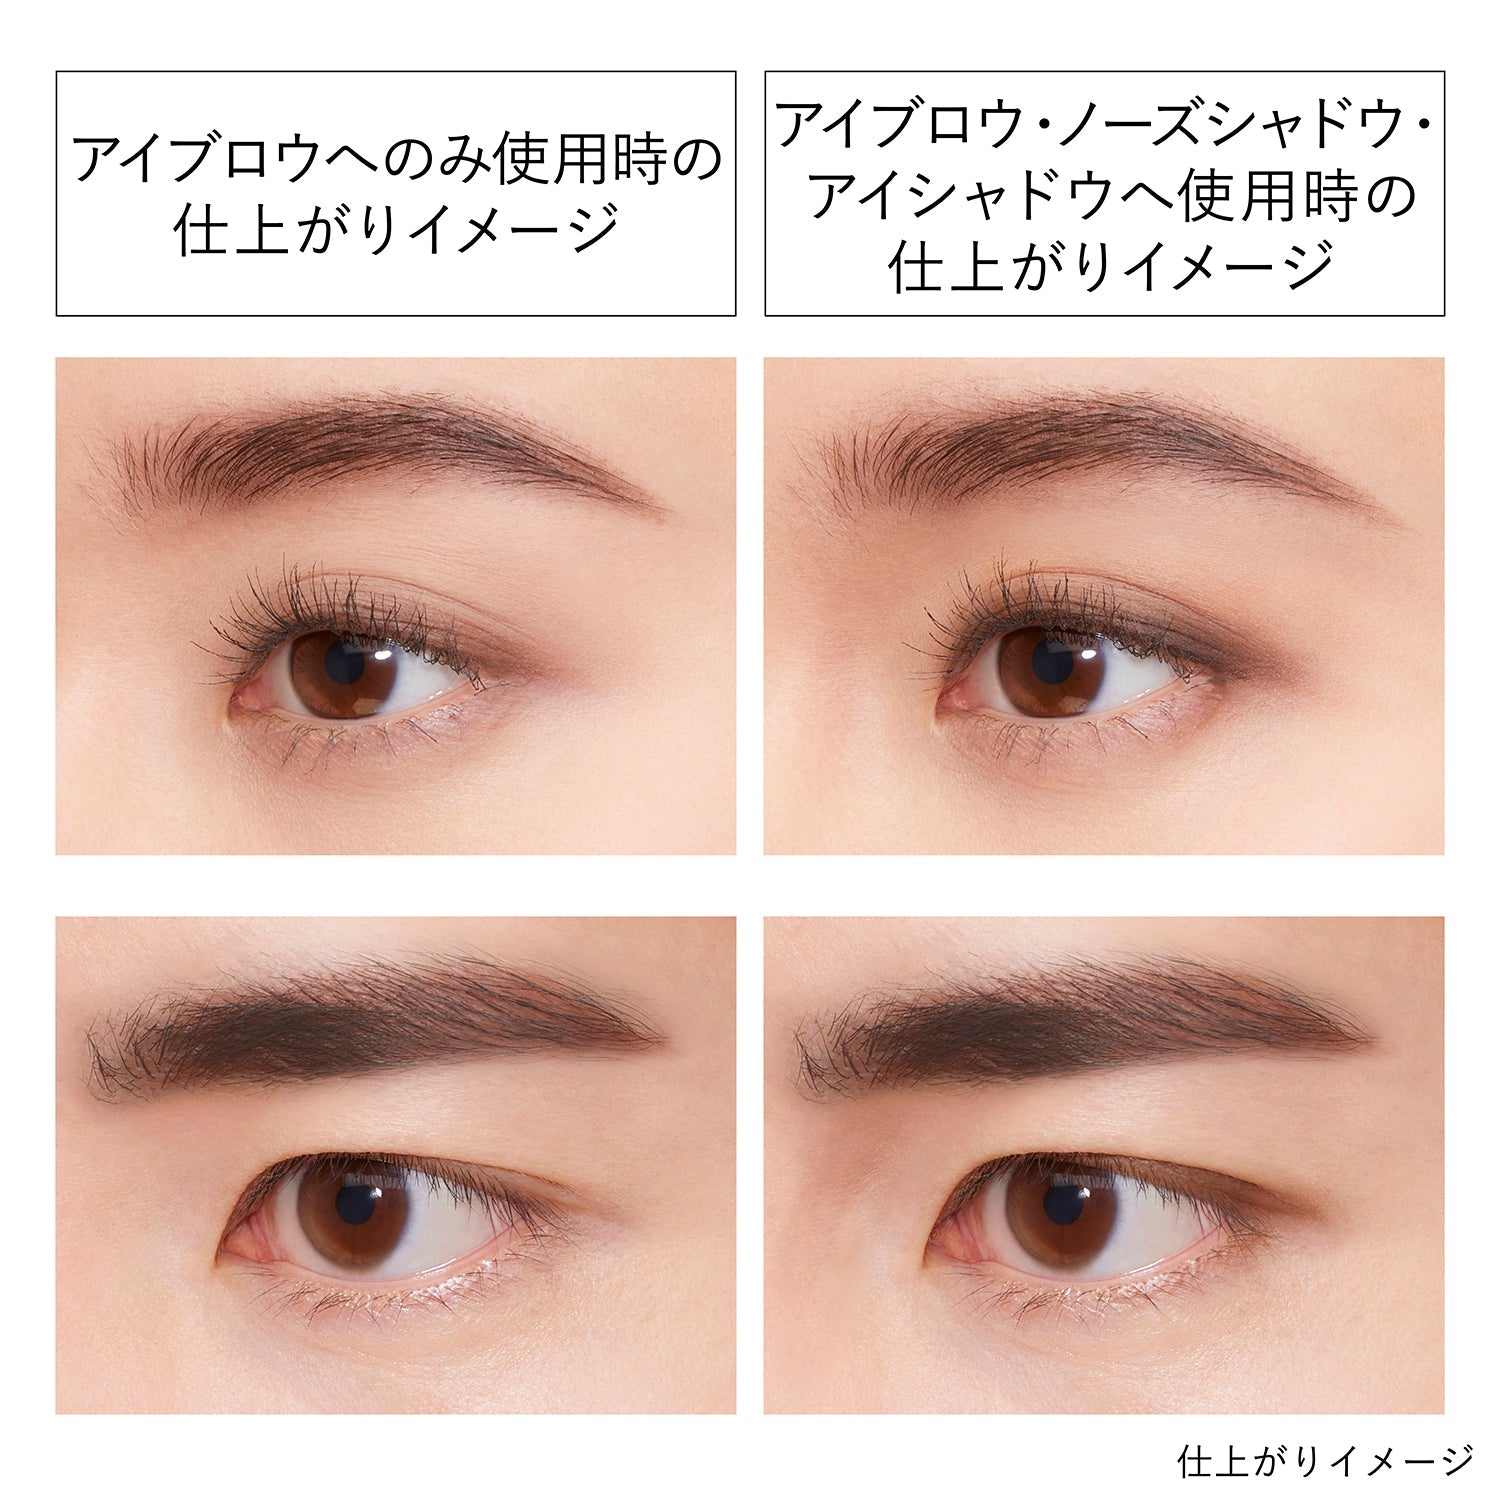 Kanebo Eyebrow Duo - Ichiban Mart